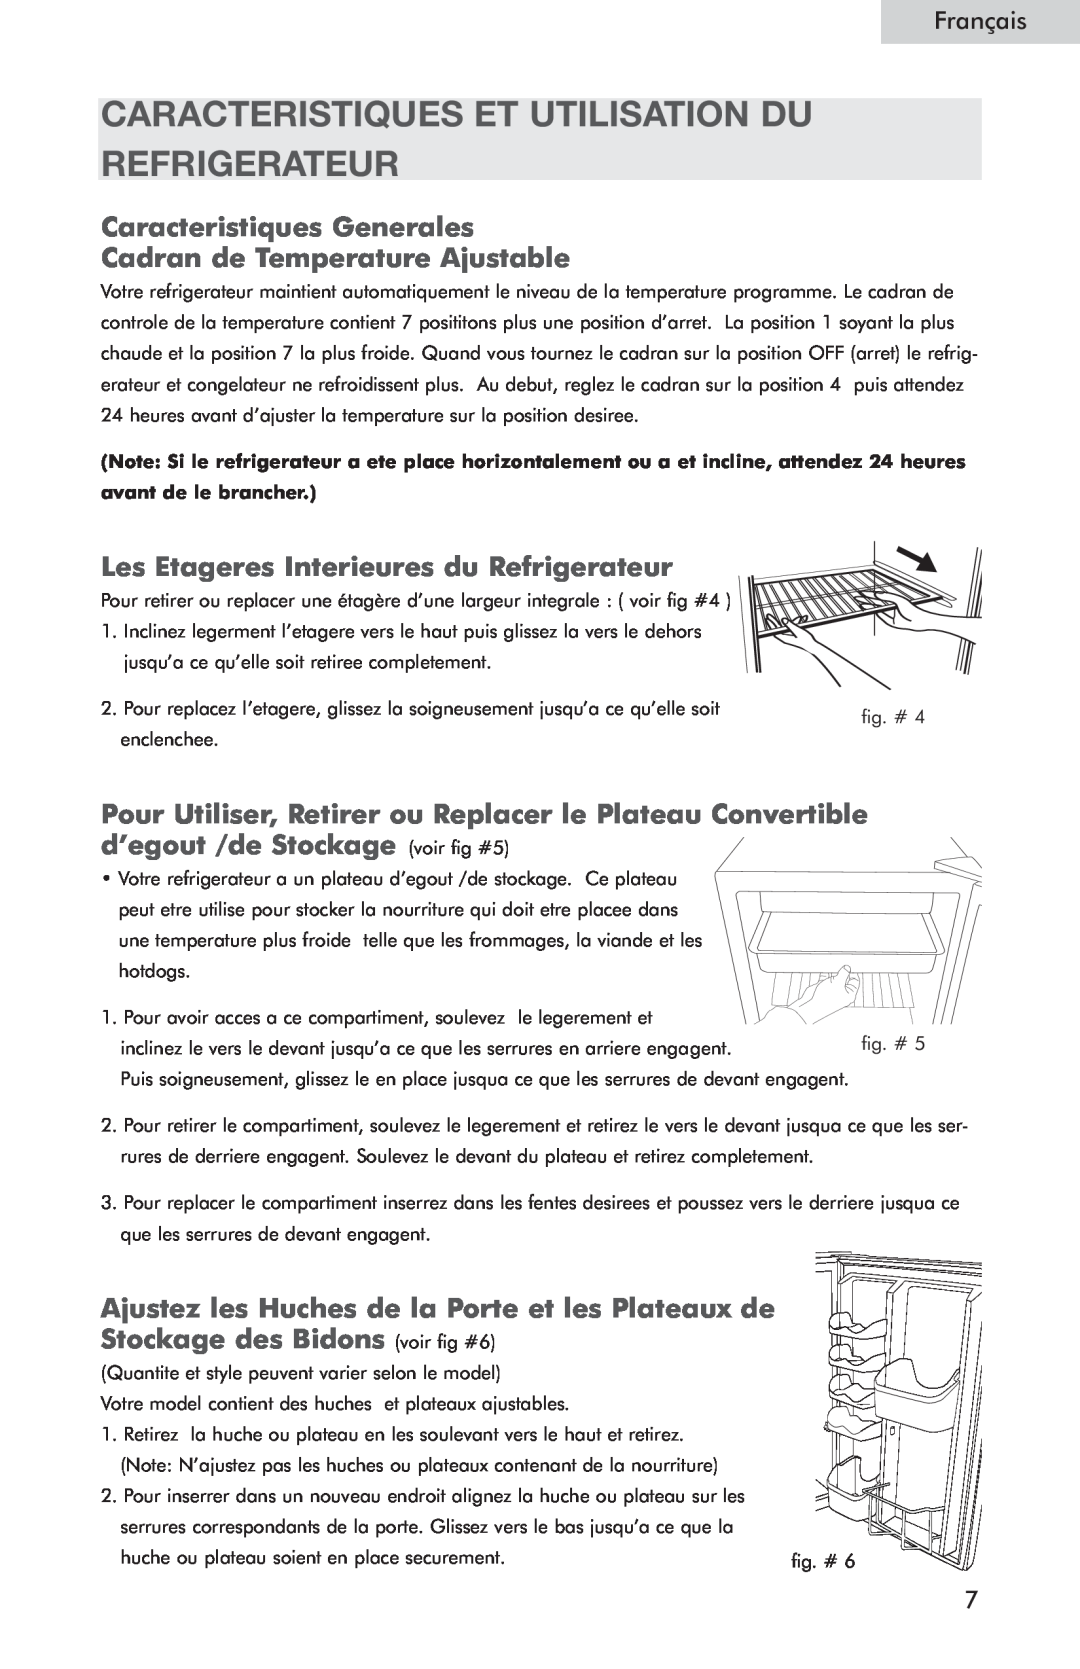 Haier HSQ05WNC Caracteristiques Et Utilisation Du Refrigerateur, Les Etageres Interieures du Refrigerateur, Français 